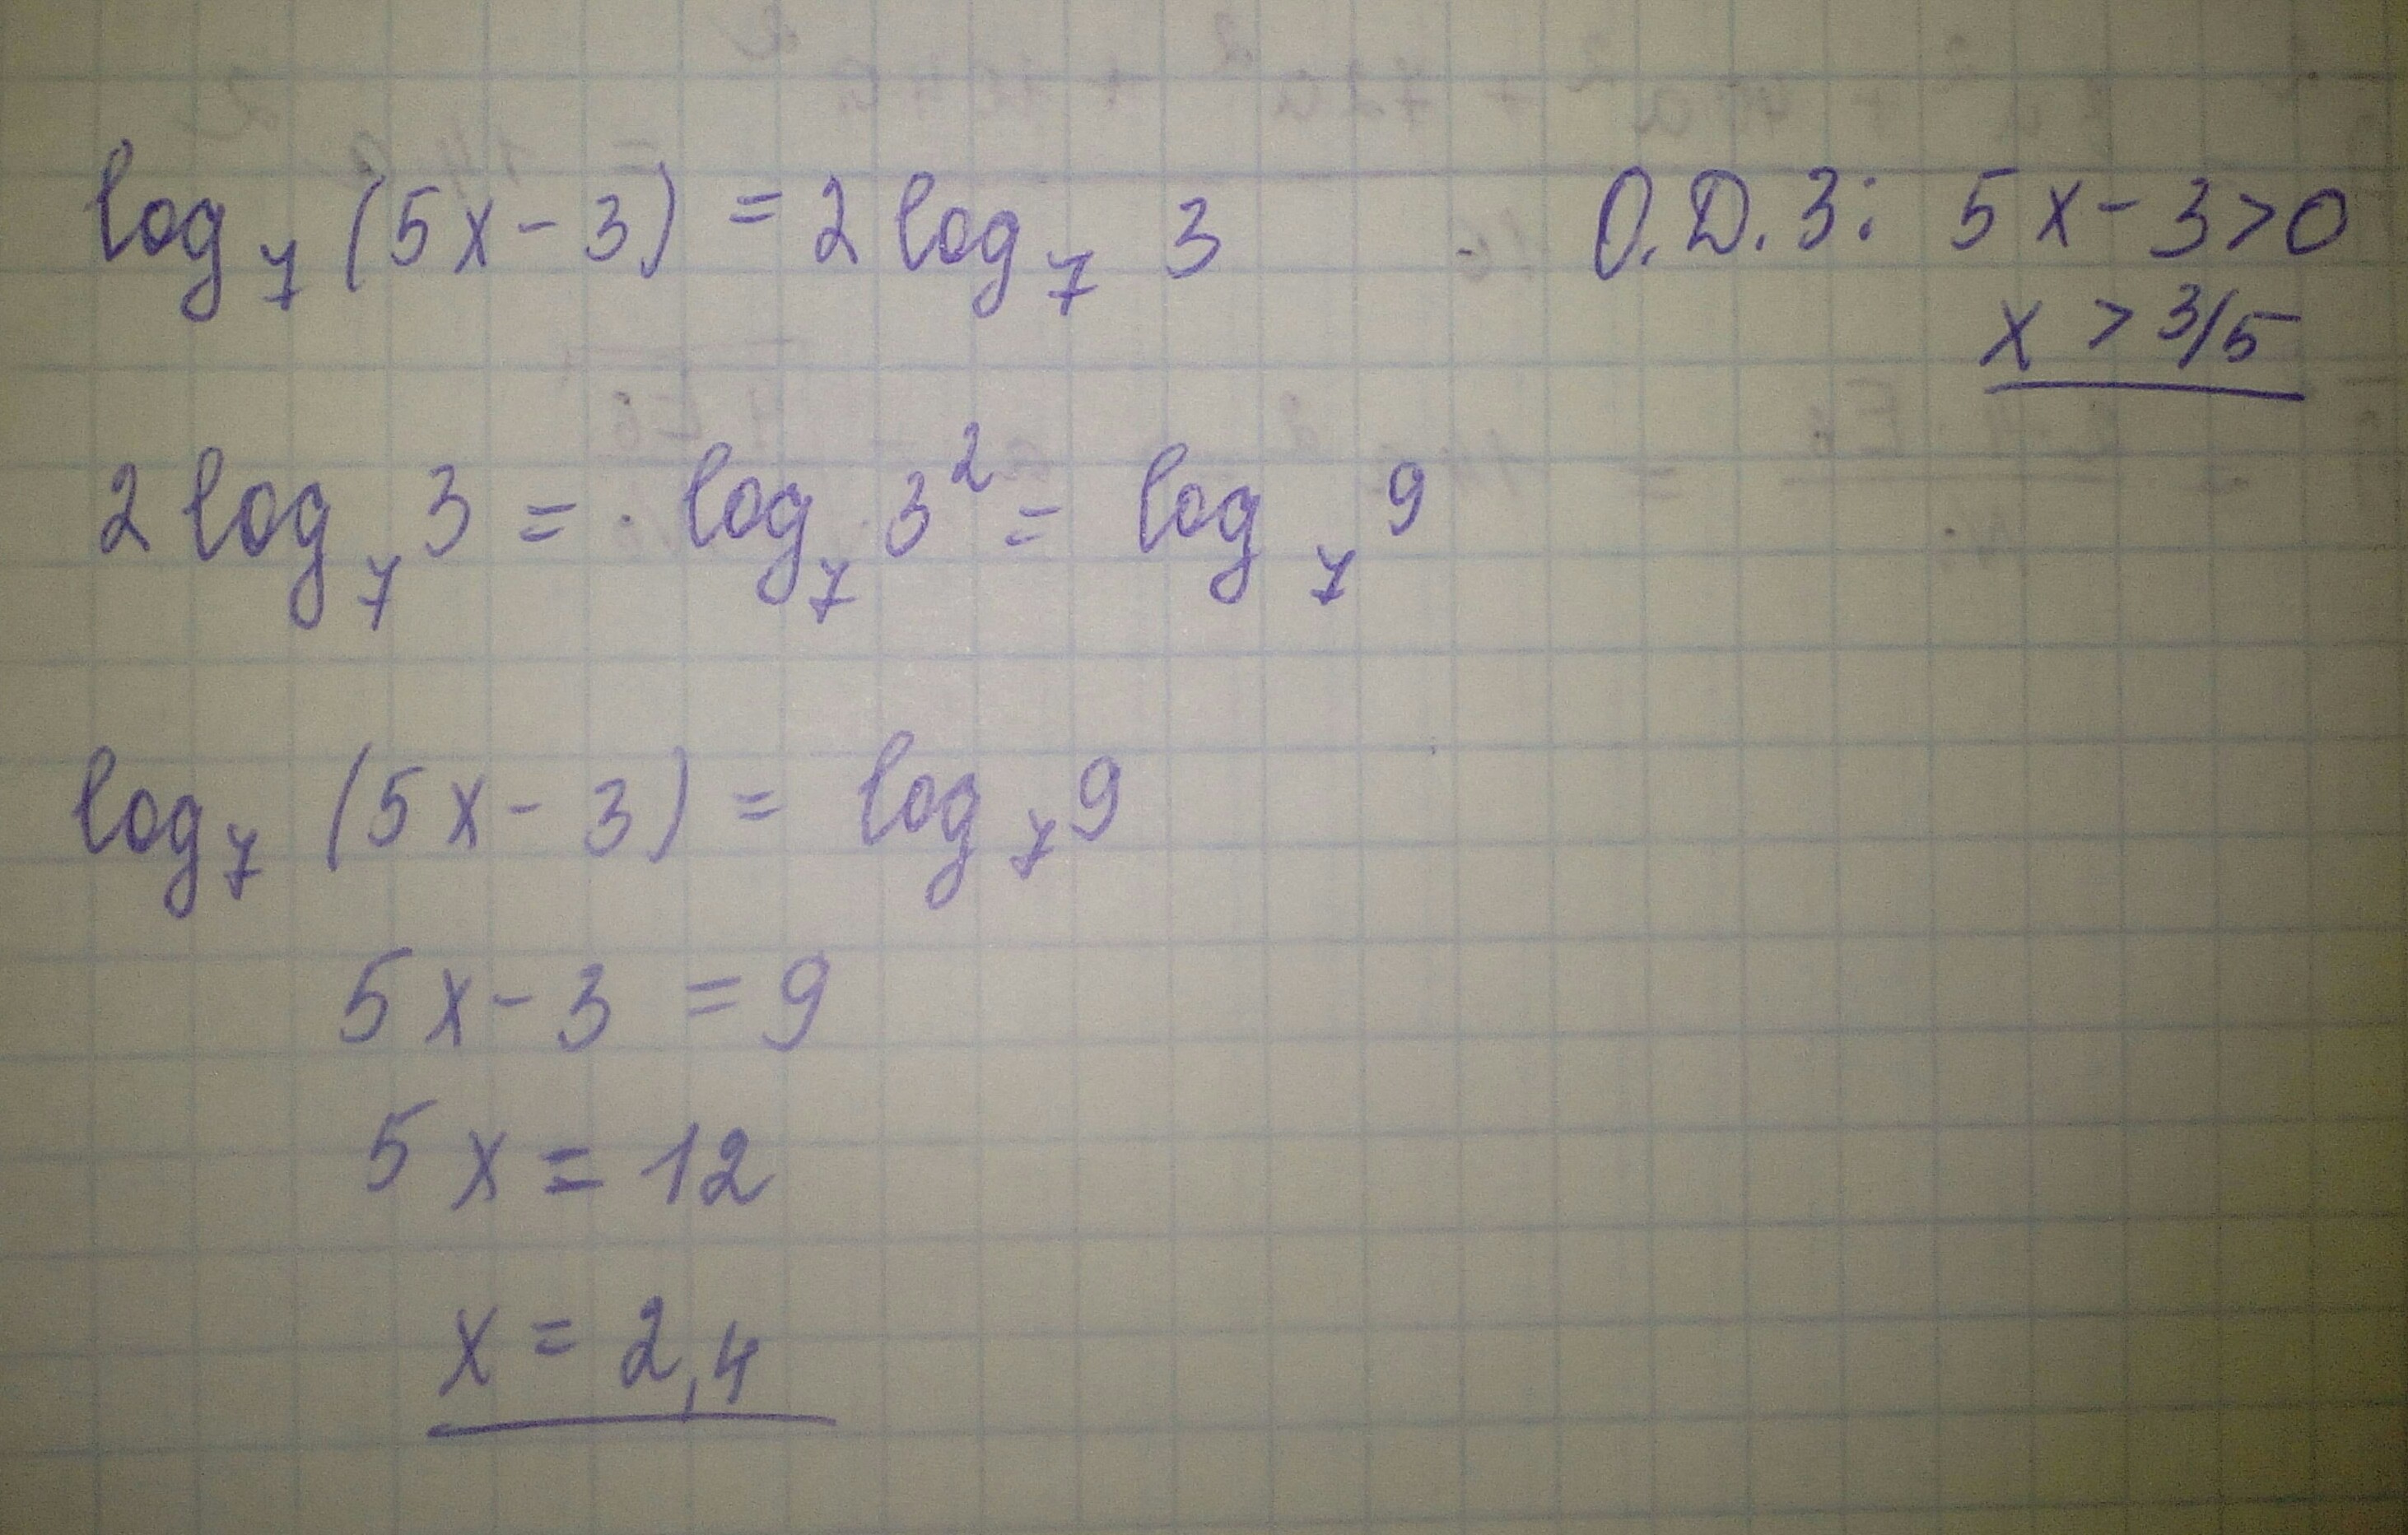 9x 7 x 3 5 4x. Найдите корни уравнения log5 (x-1)=2. Найдите корень уравнения Лог. Log(2)(x^2-5)*(log(3)(7-x))^2+3*log(2)(x^2-5)-log(3)(7-x)-6=0. Найдите корень уравнения log4 2 5x+7 3.